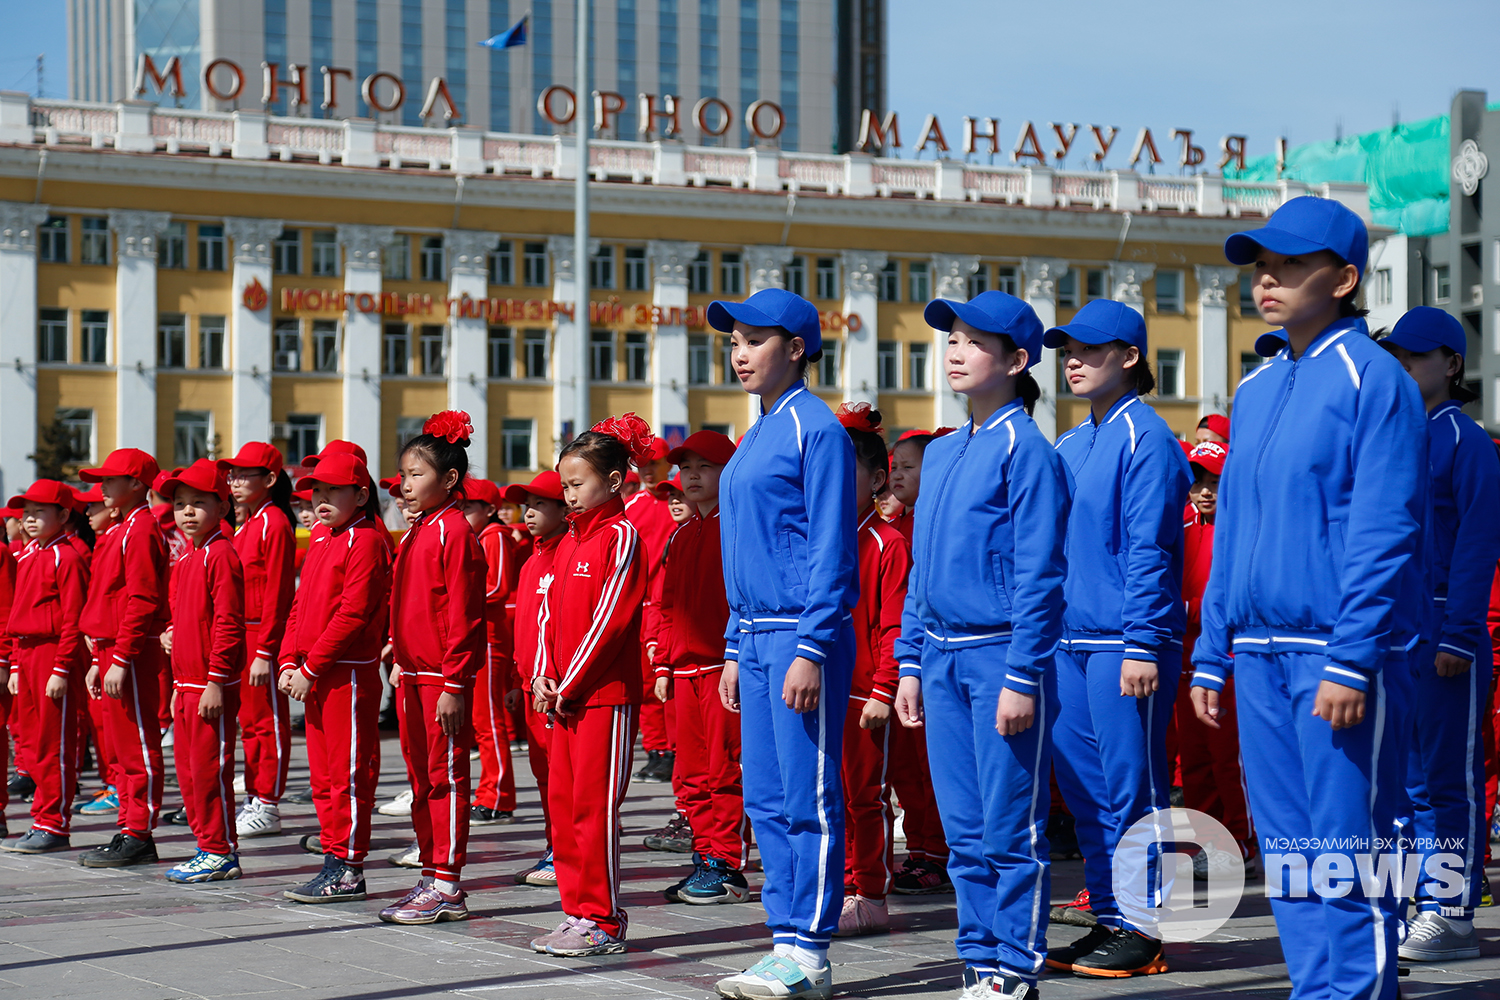 Монгол Улсын Ерөнхийлөгч Х.Баттулга 3333 сурагчийн хамт Тусгаар тогтнол шүлэг уншлаа (8)